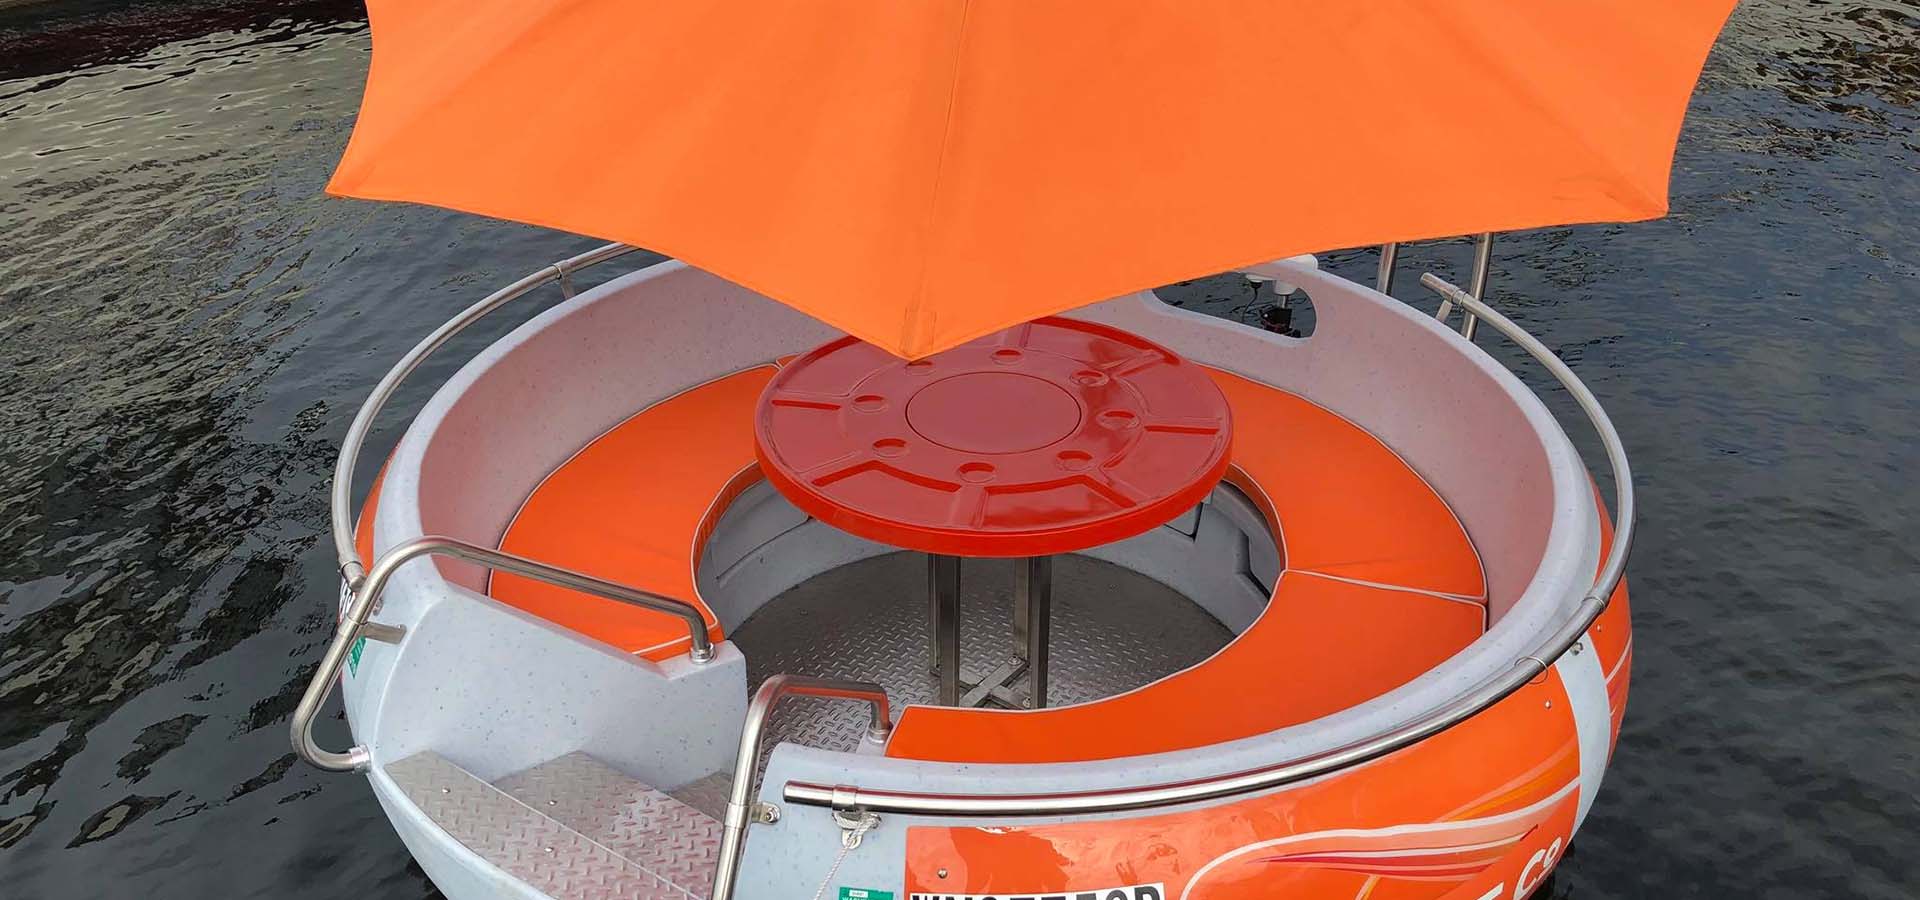 Mini boat shaped like a donut with orange umbrella